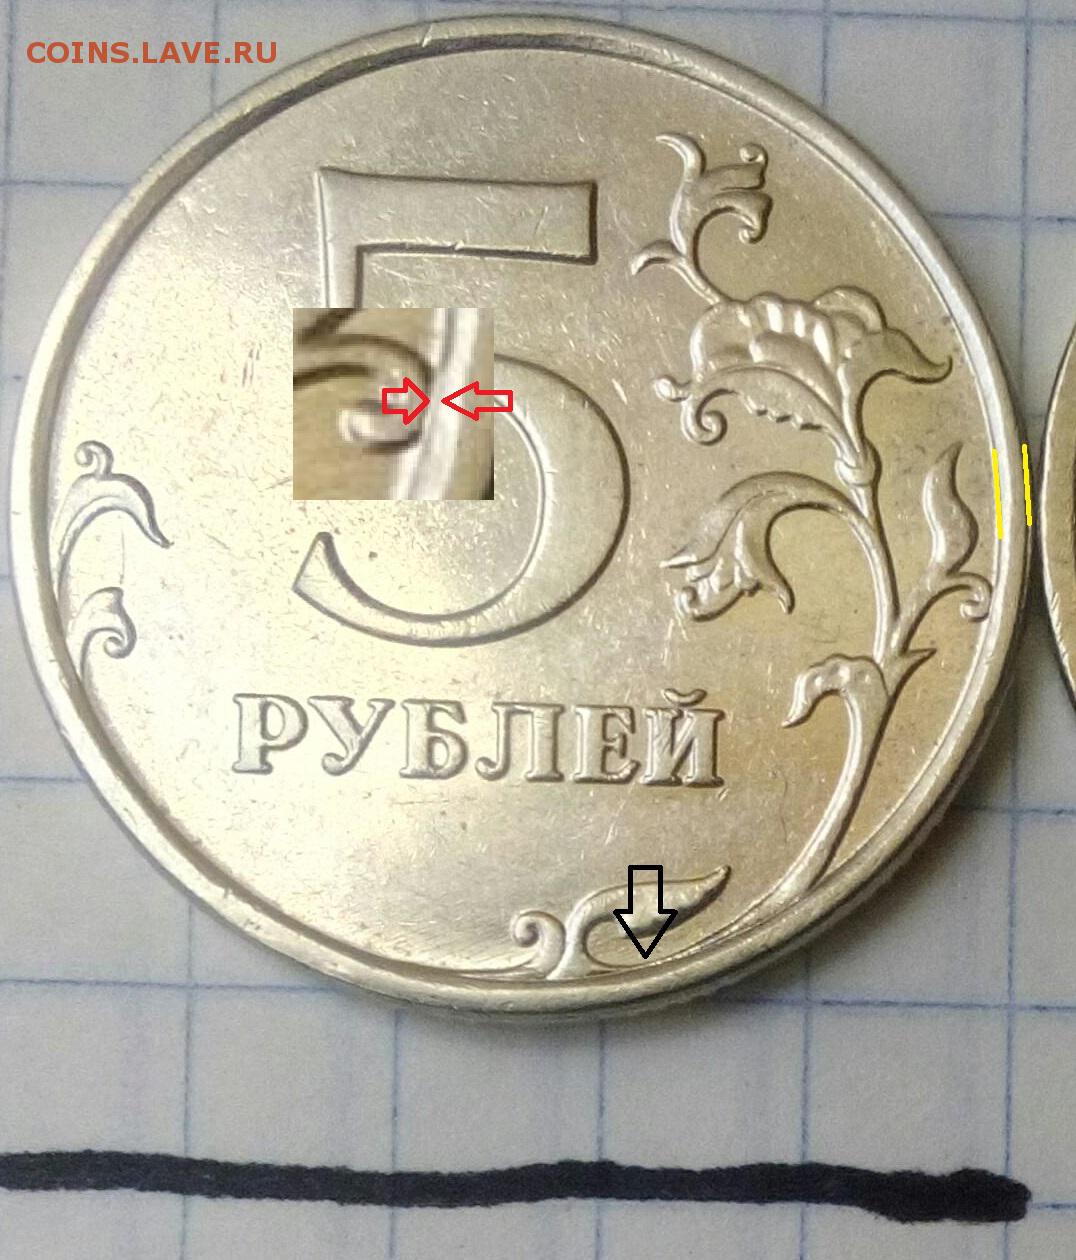 5 рублей 78. 5+Рублей+2009+ММД+магнитная+шт.5.5+фото+. 5 Руб 2009 г ММД магнитная подсказка. 5 Рублей 2009 года ММД магнитная узкий кант цена. Форум магнитная 2 руб 2009 ММД изображение больше.